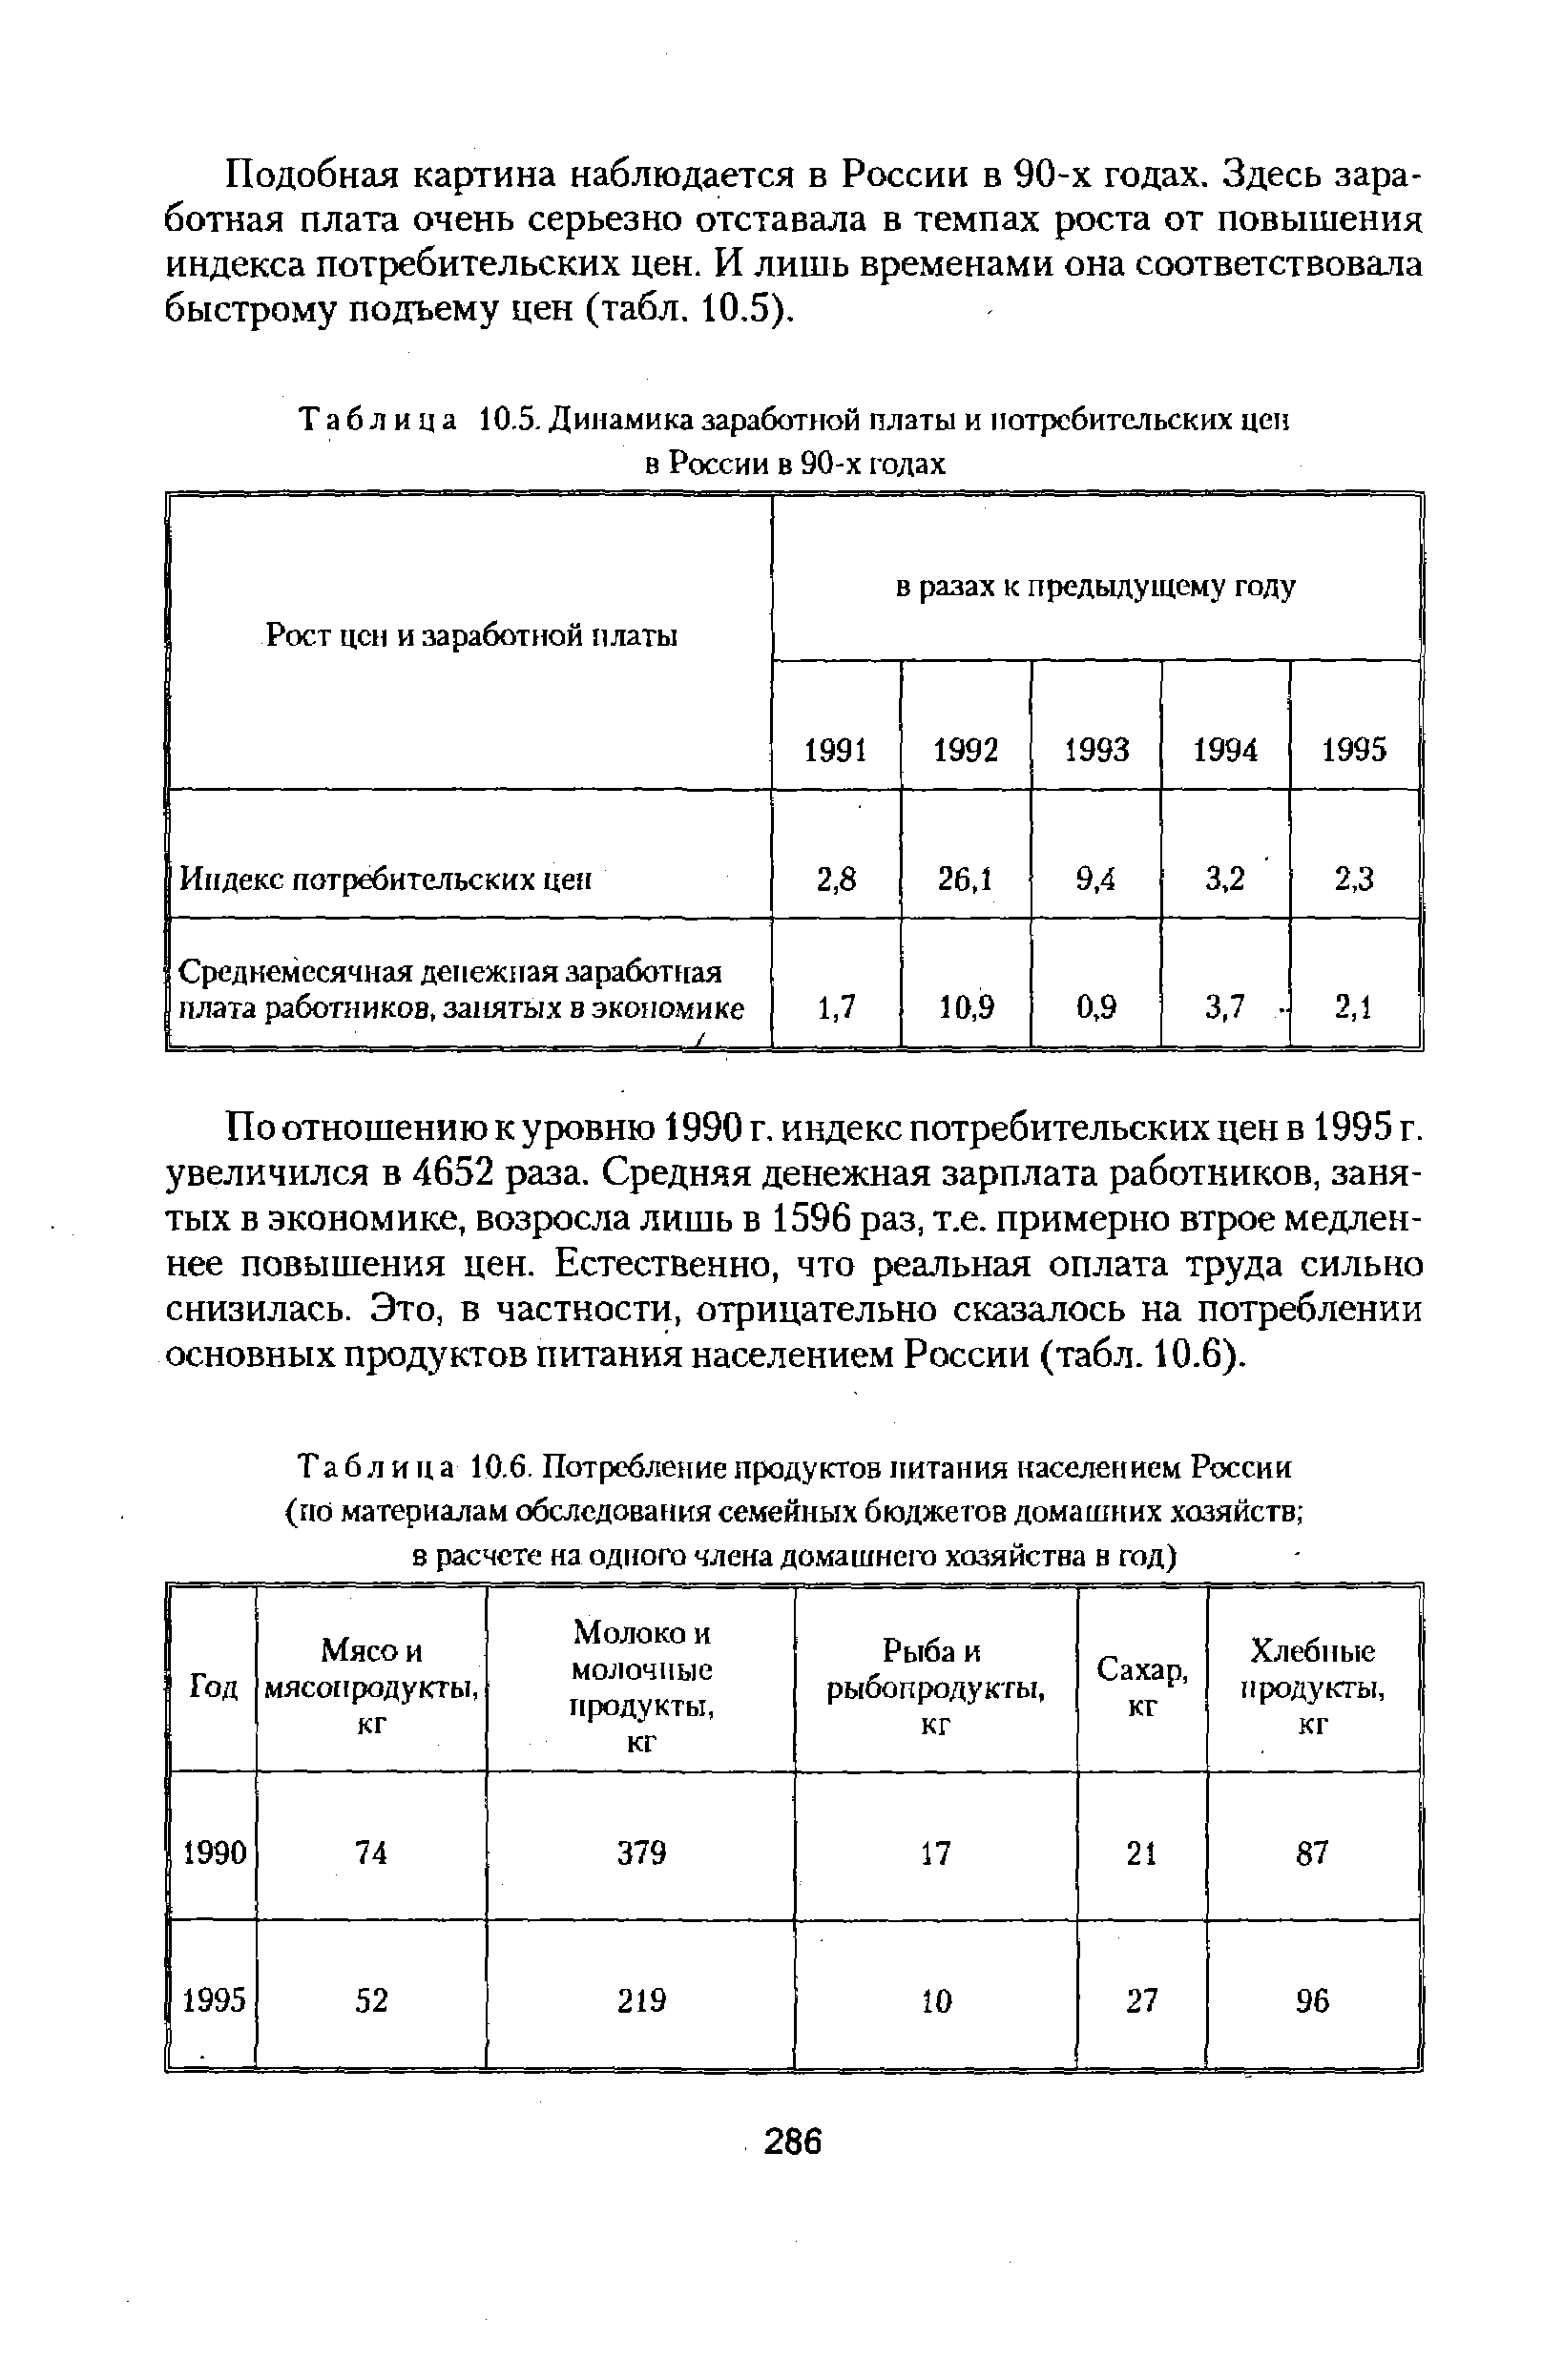 Таблица 10.6. Потребление продуктов питания населением России
